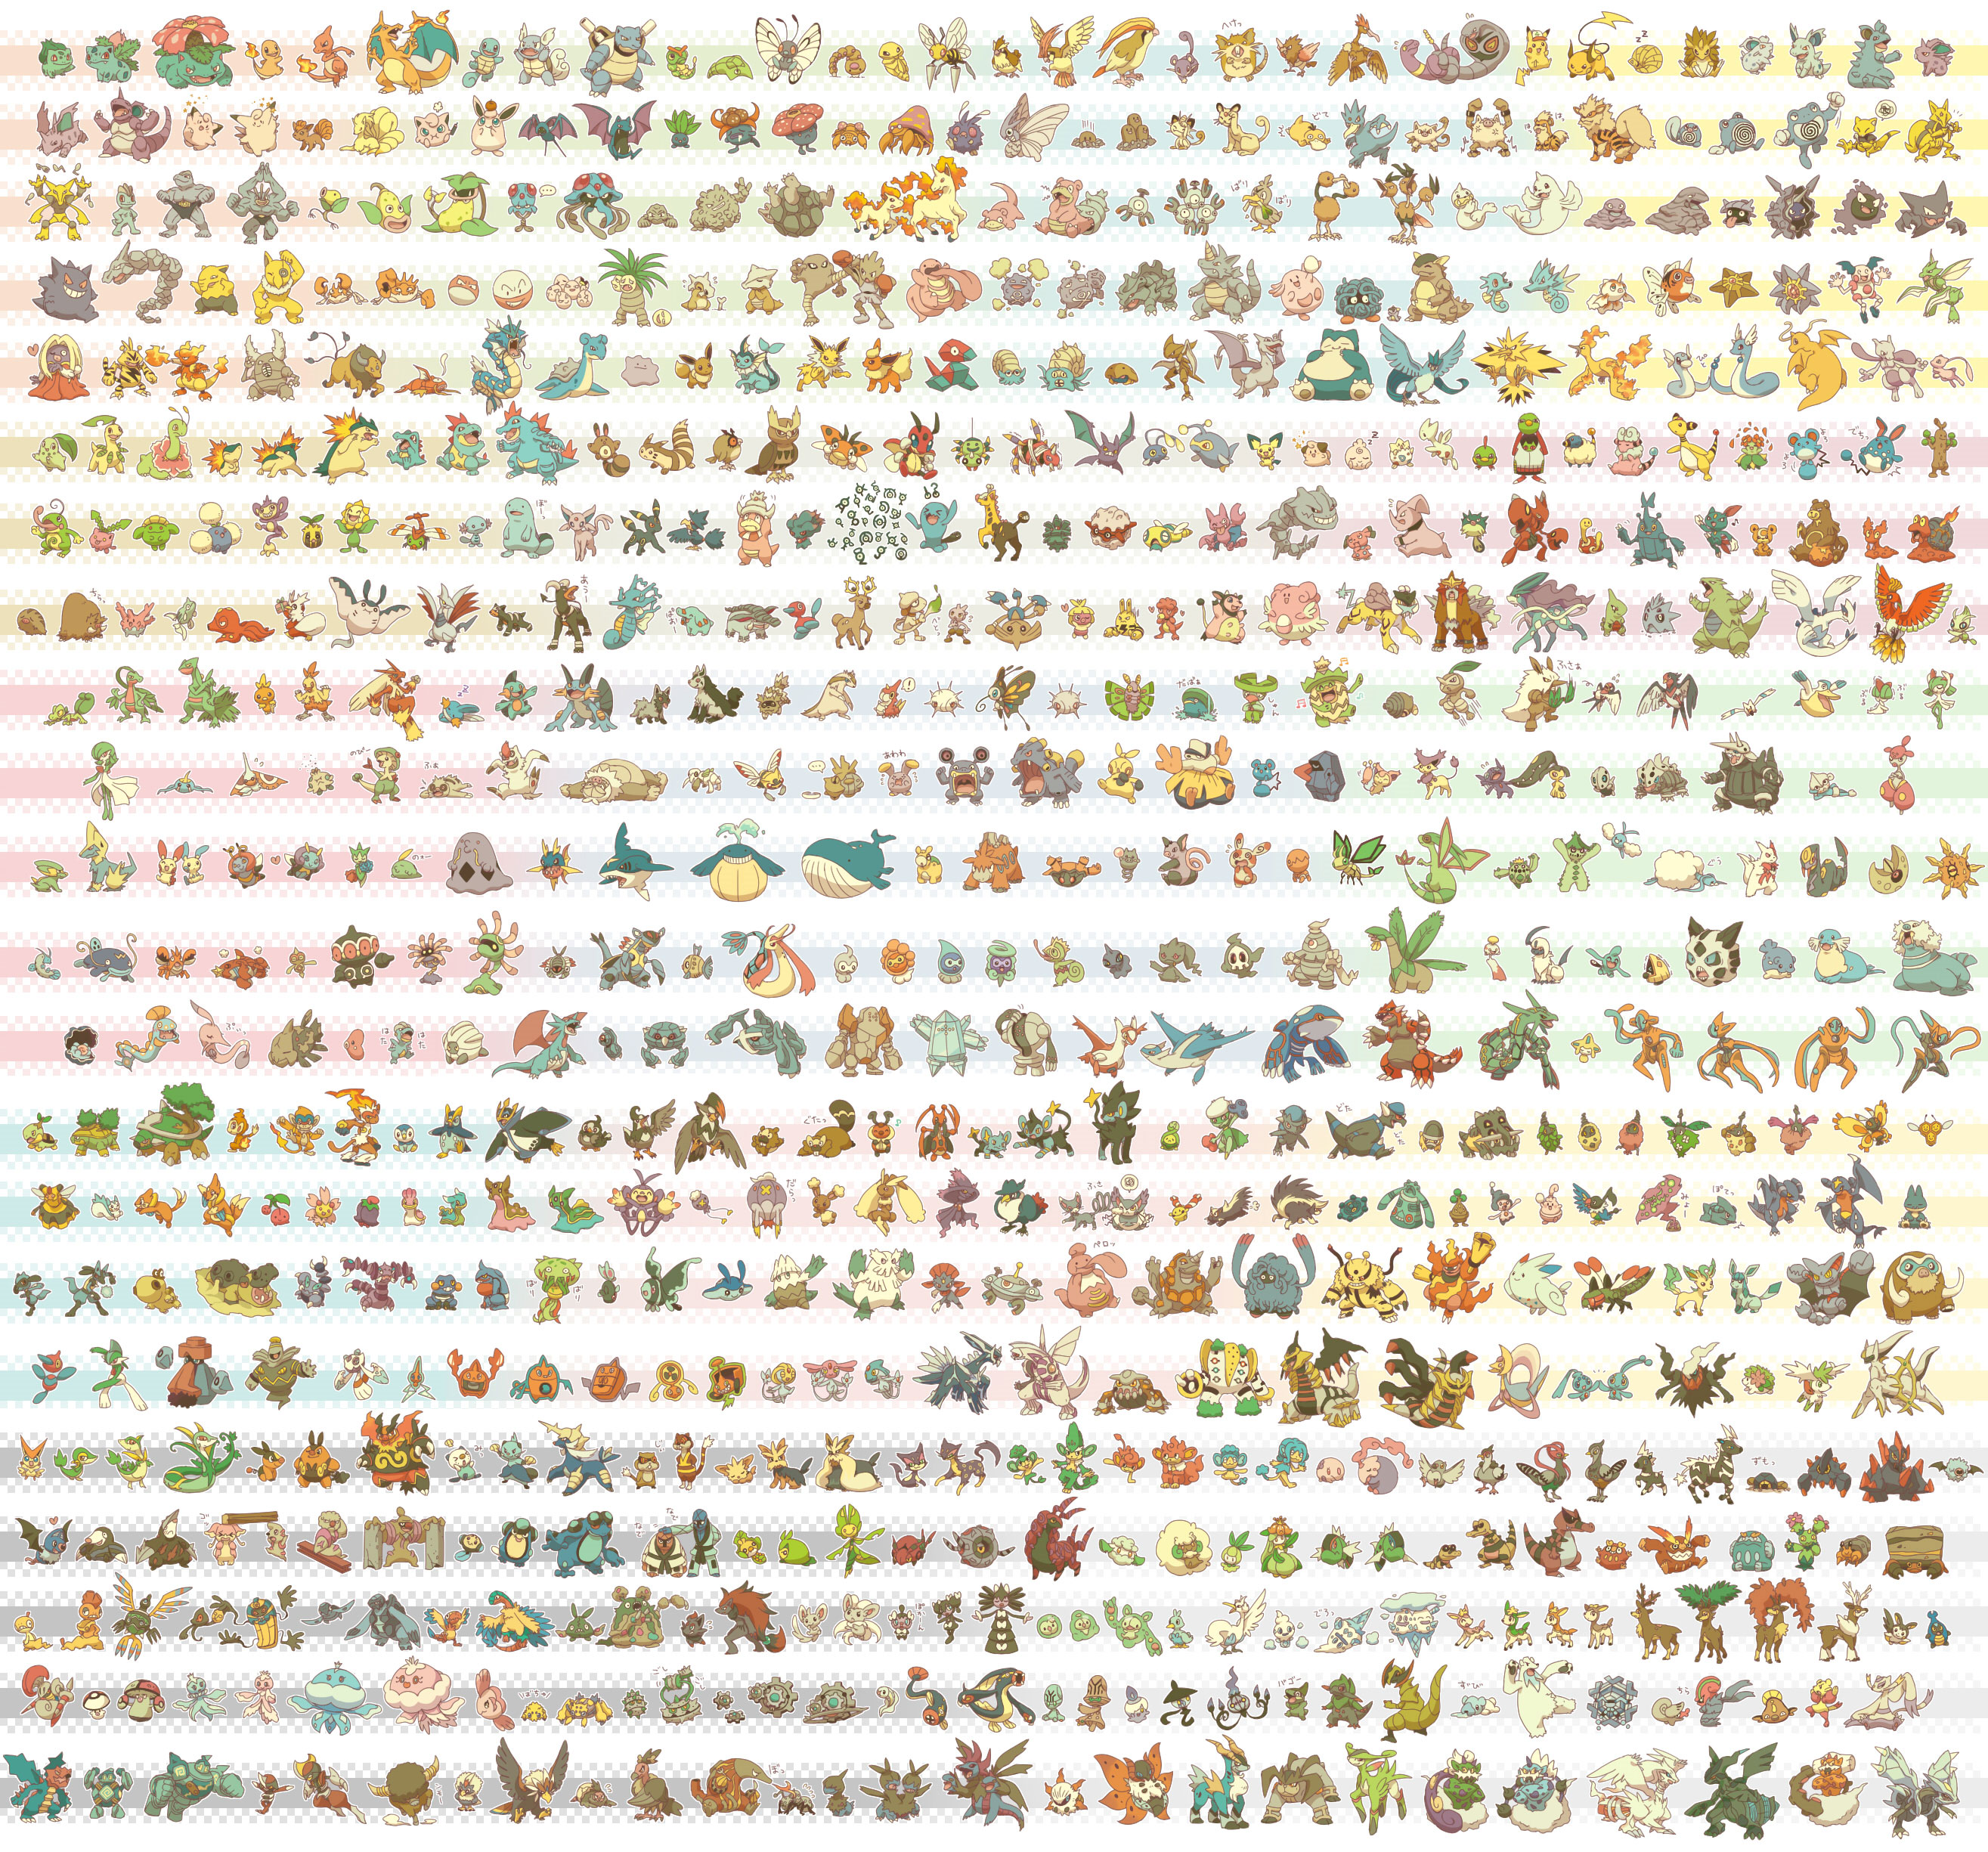 comodidad Maligno Sinfonía Los 646 Pokémon en una grandiosa imagen – El Blog de Topofarmer